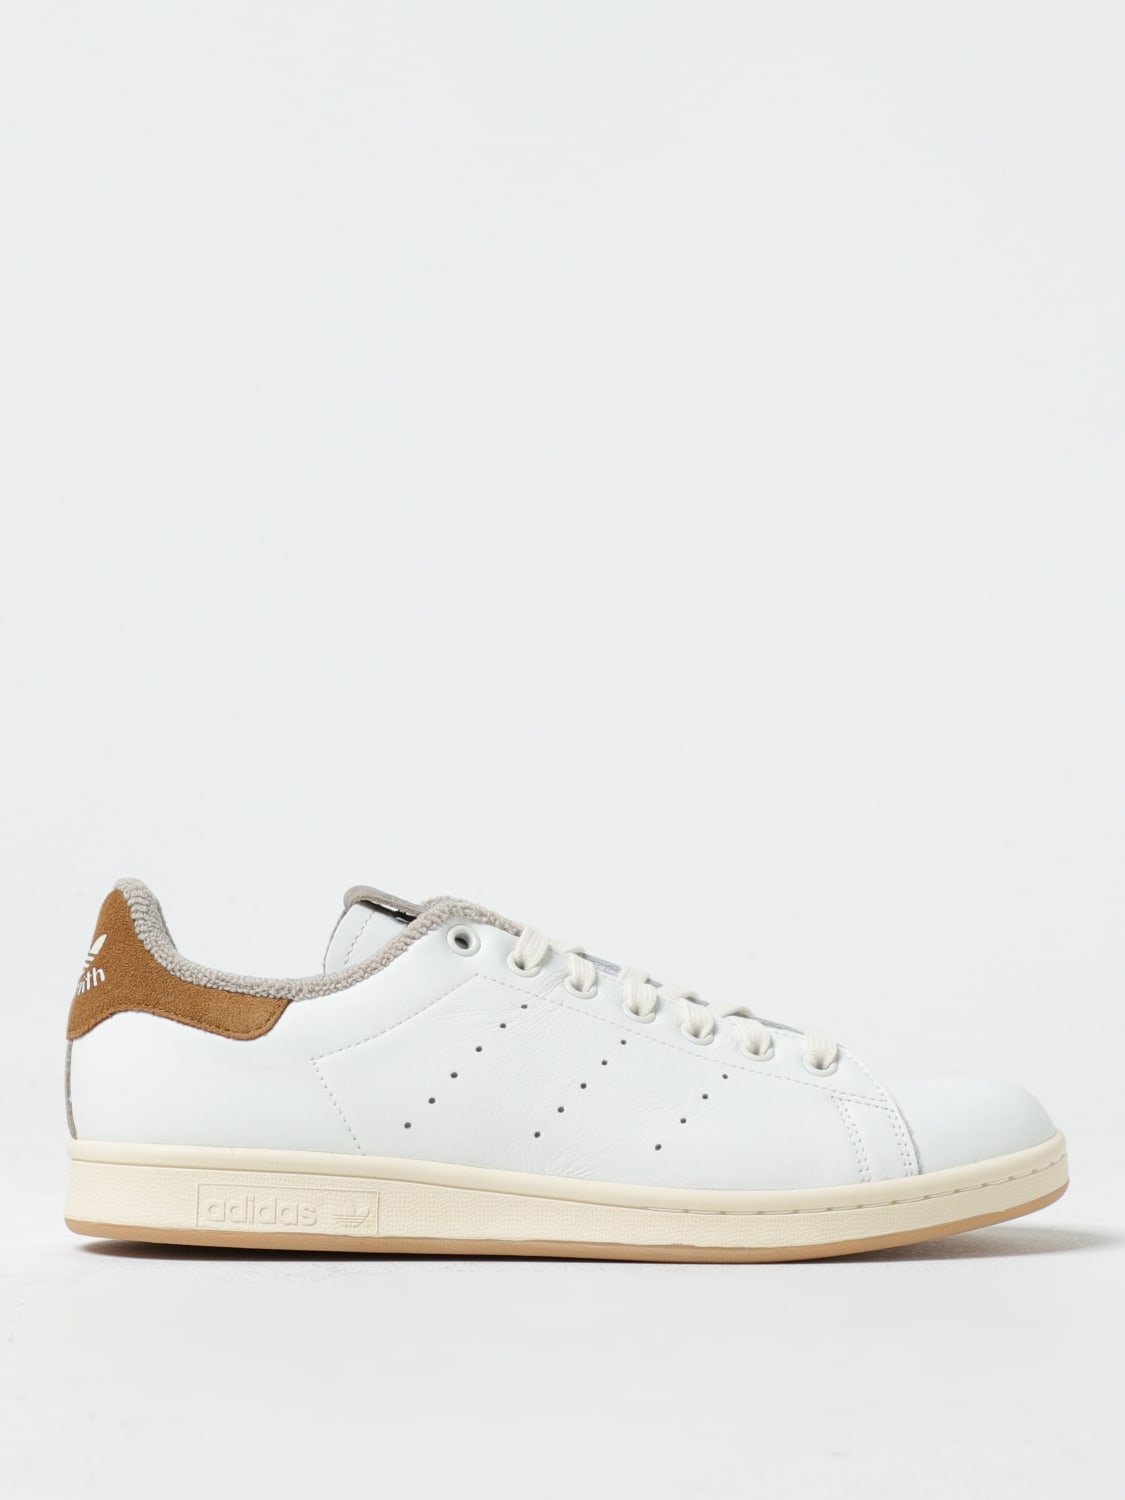 ADIDAS ORIGINALS: Stan Smith sneakers online in | Adidas Originals ID2031 - White leather at sneakers